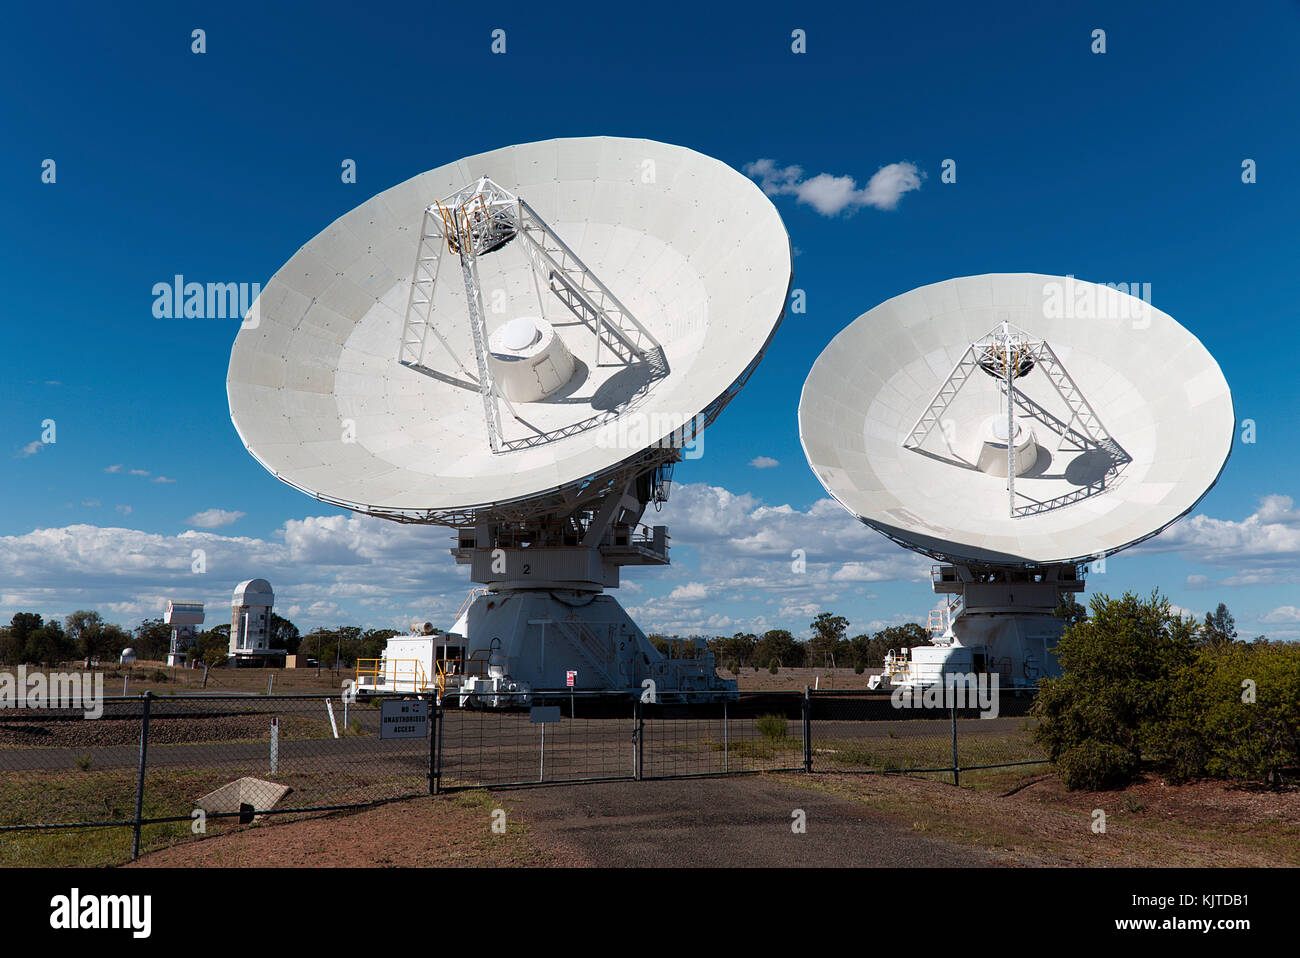 L'Australia Telescope Compact Array (ATCA), à l'Observatoire, Paul Wild Narrabri NSW Australie Banque D'Images